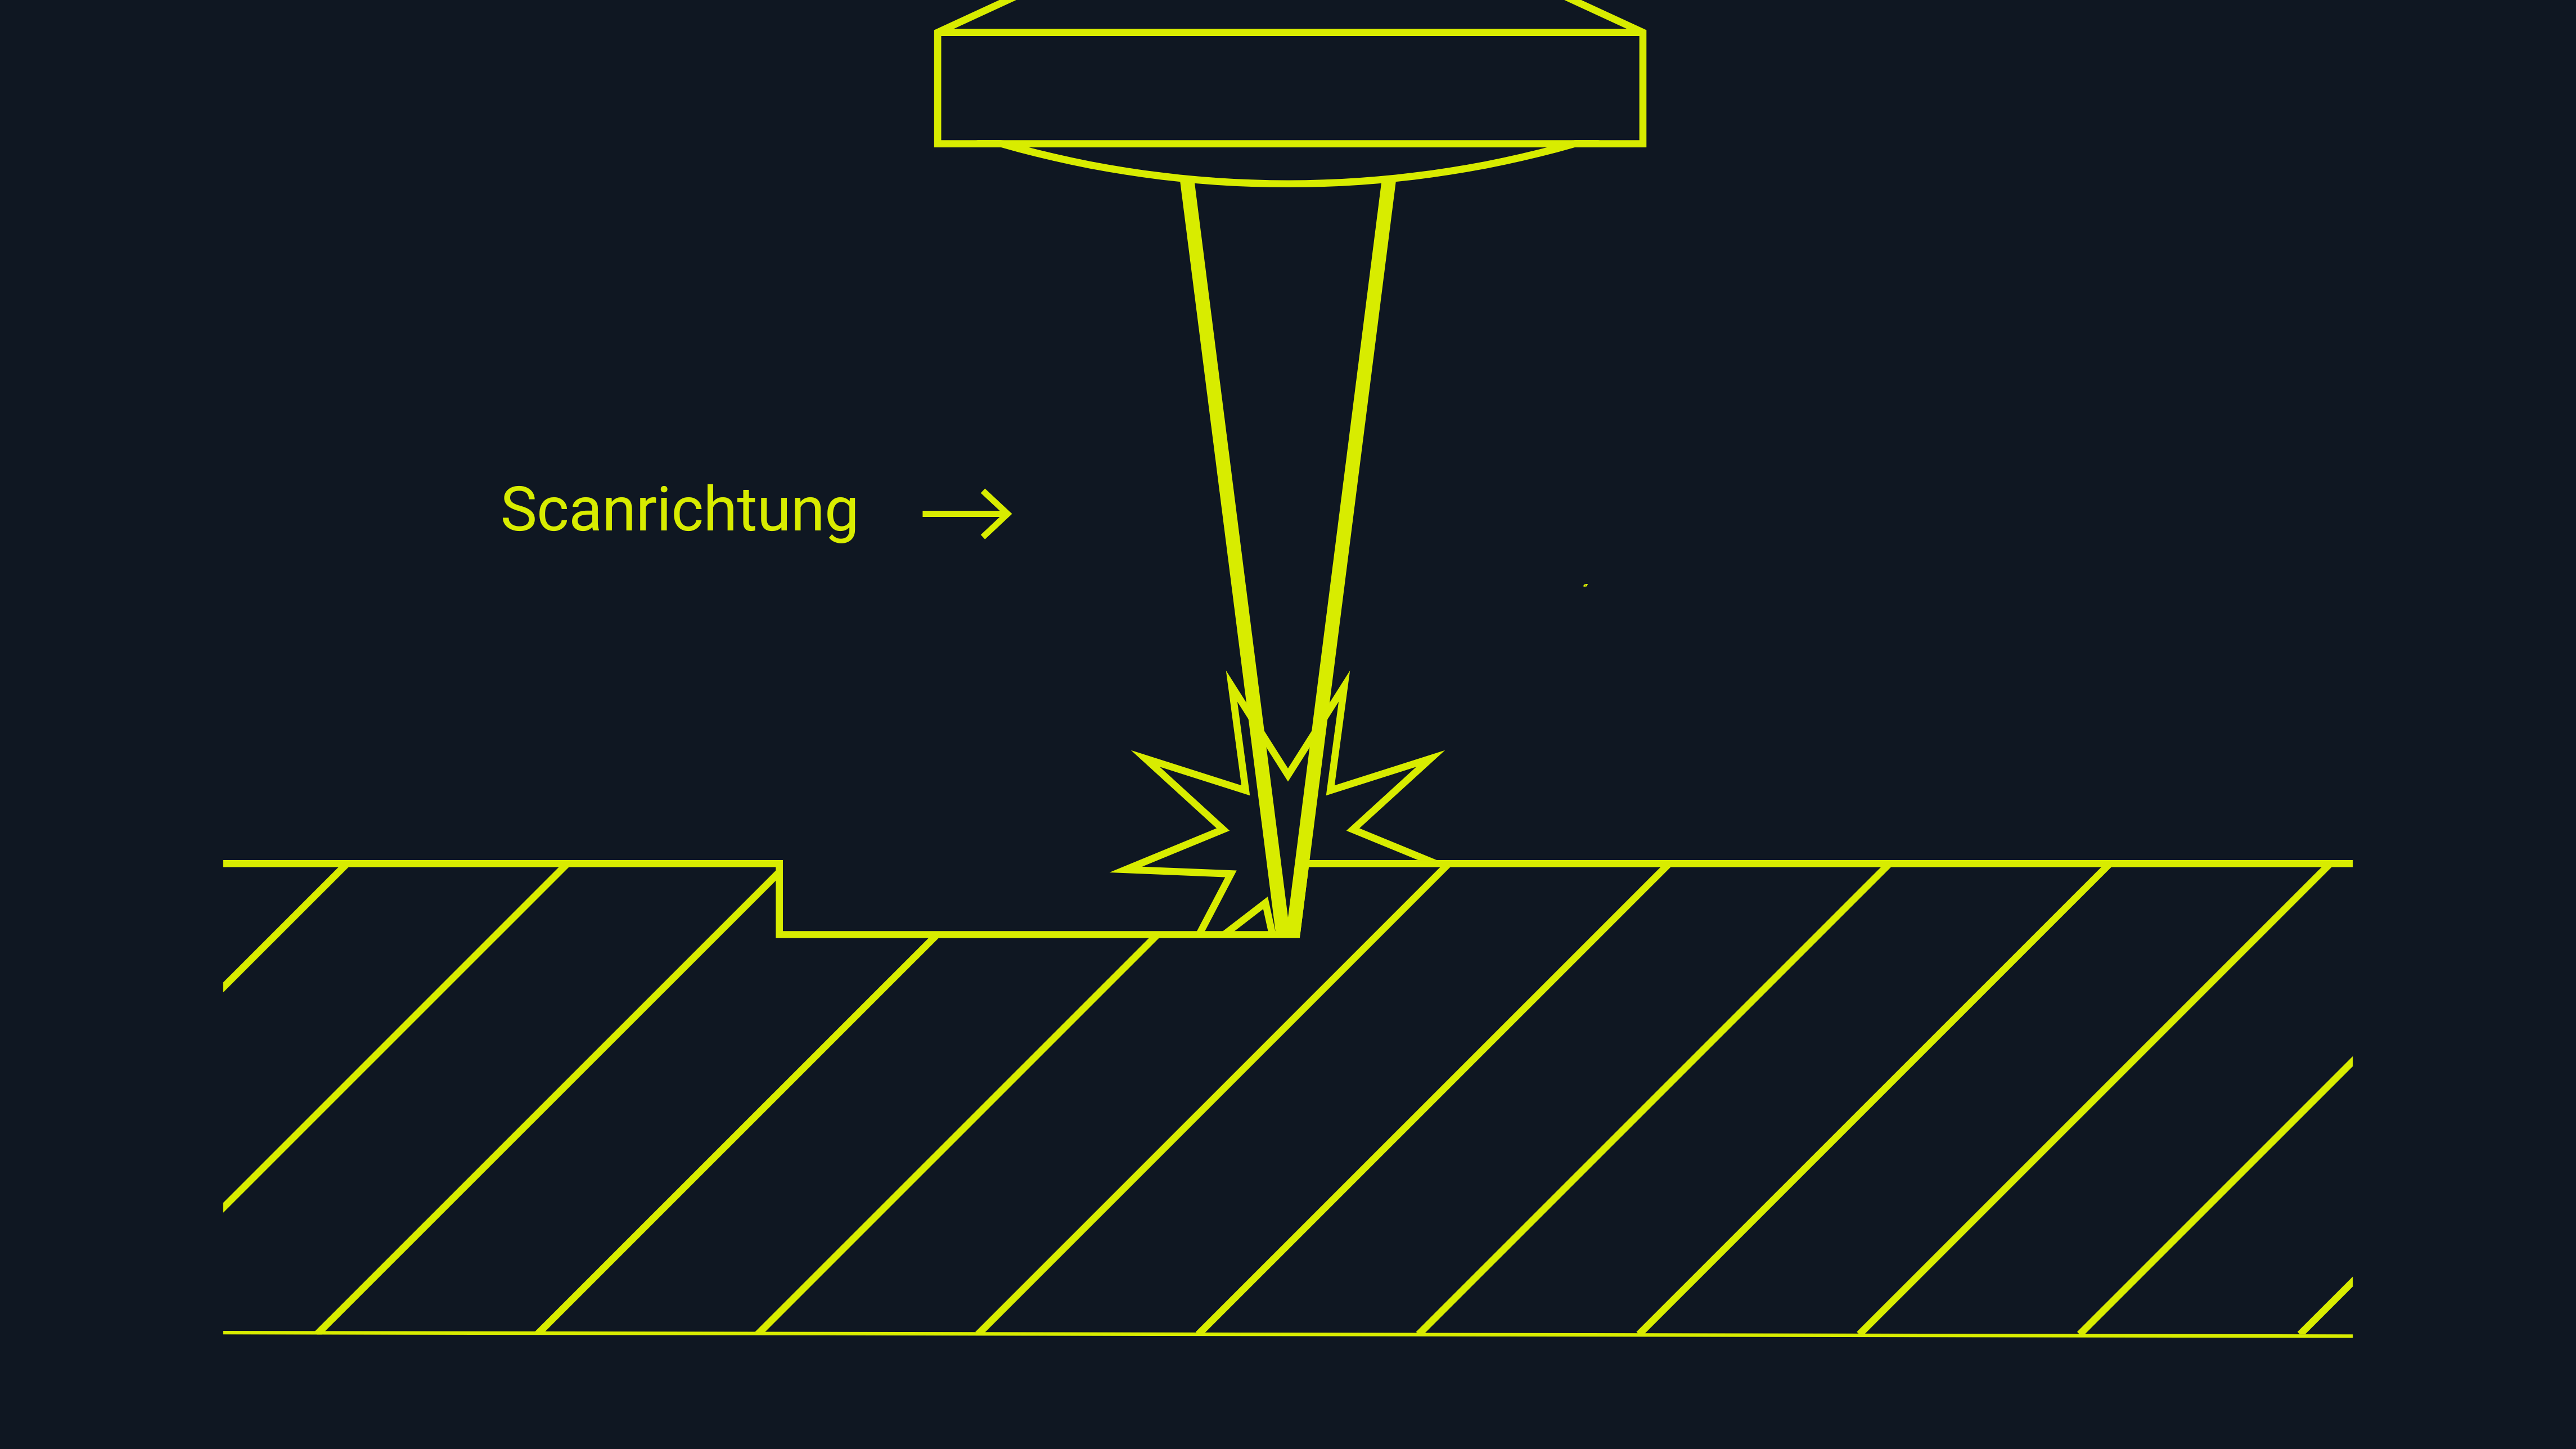 Skizzenhafte Darstellung des Gravurverfahrens mit dem Laser. 